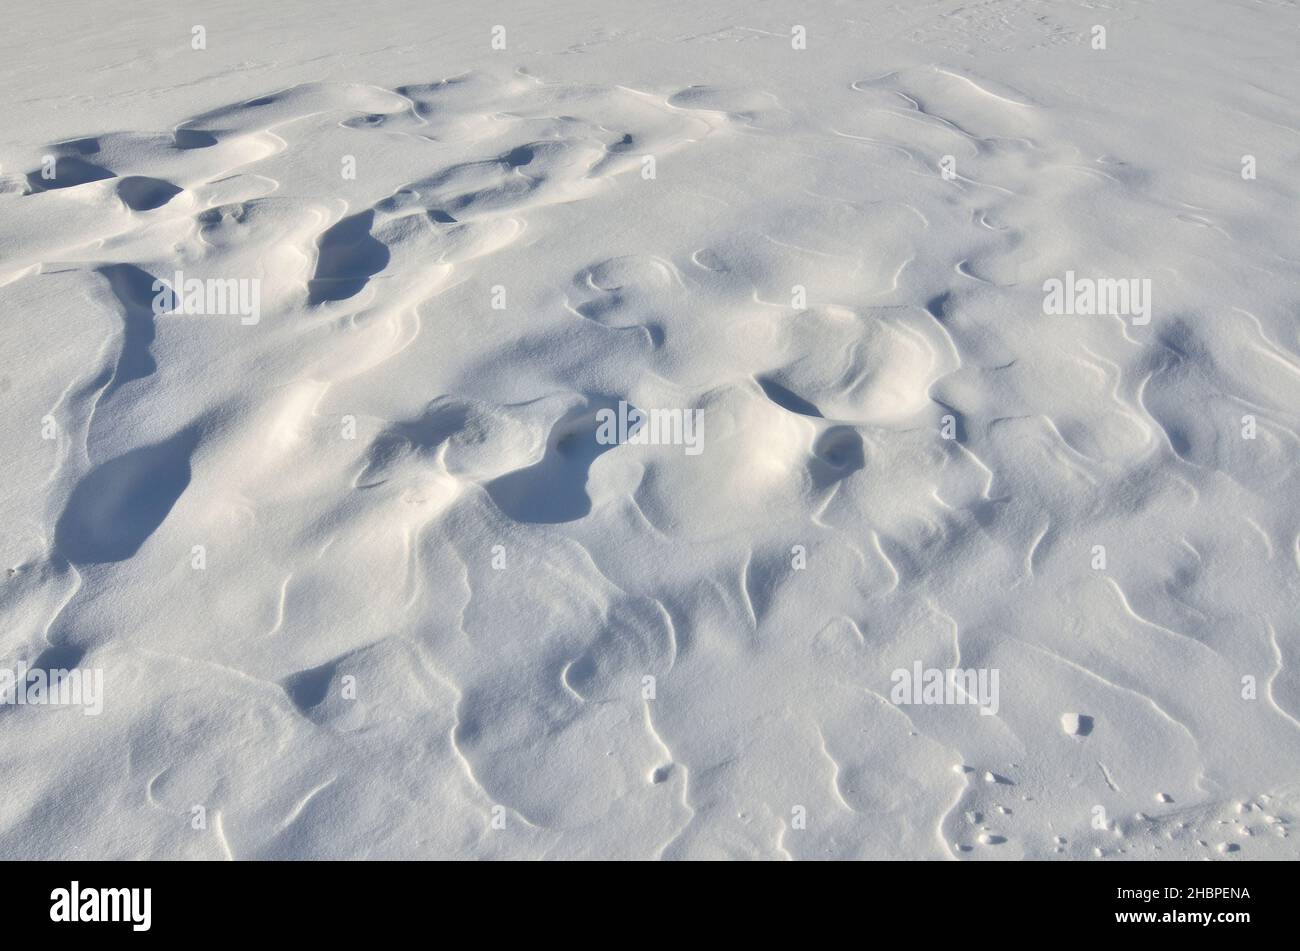 El viento creó patrones en la superficie de la nieve - invierno abstracto fondo nevado. Foto de stock